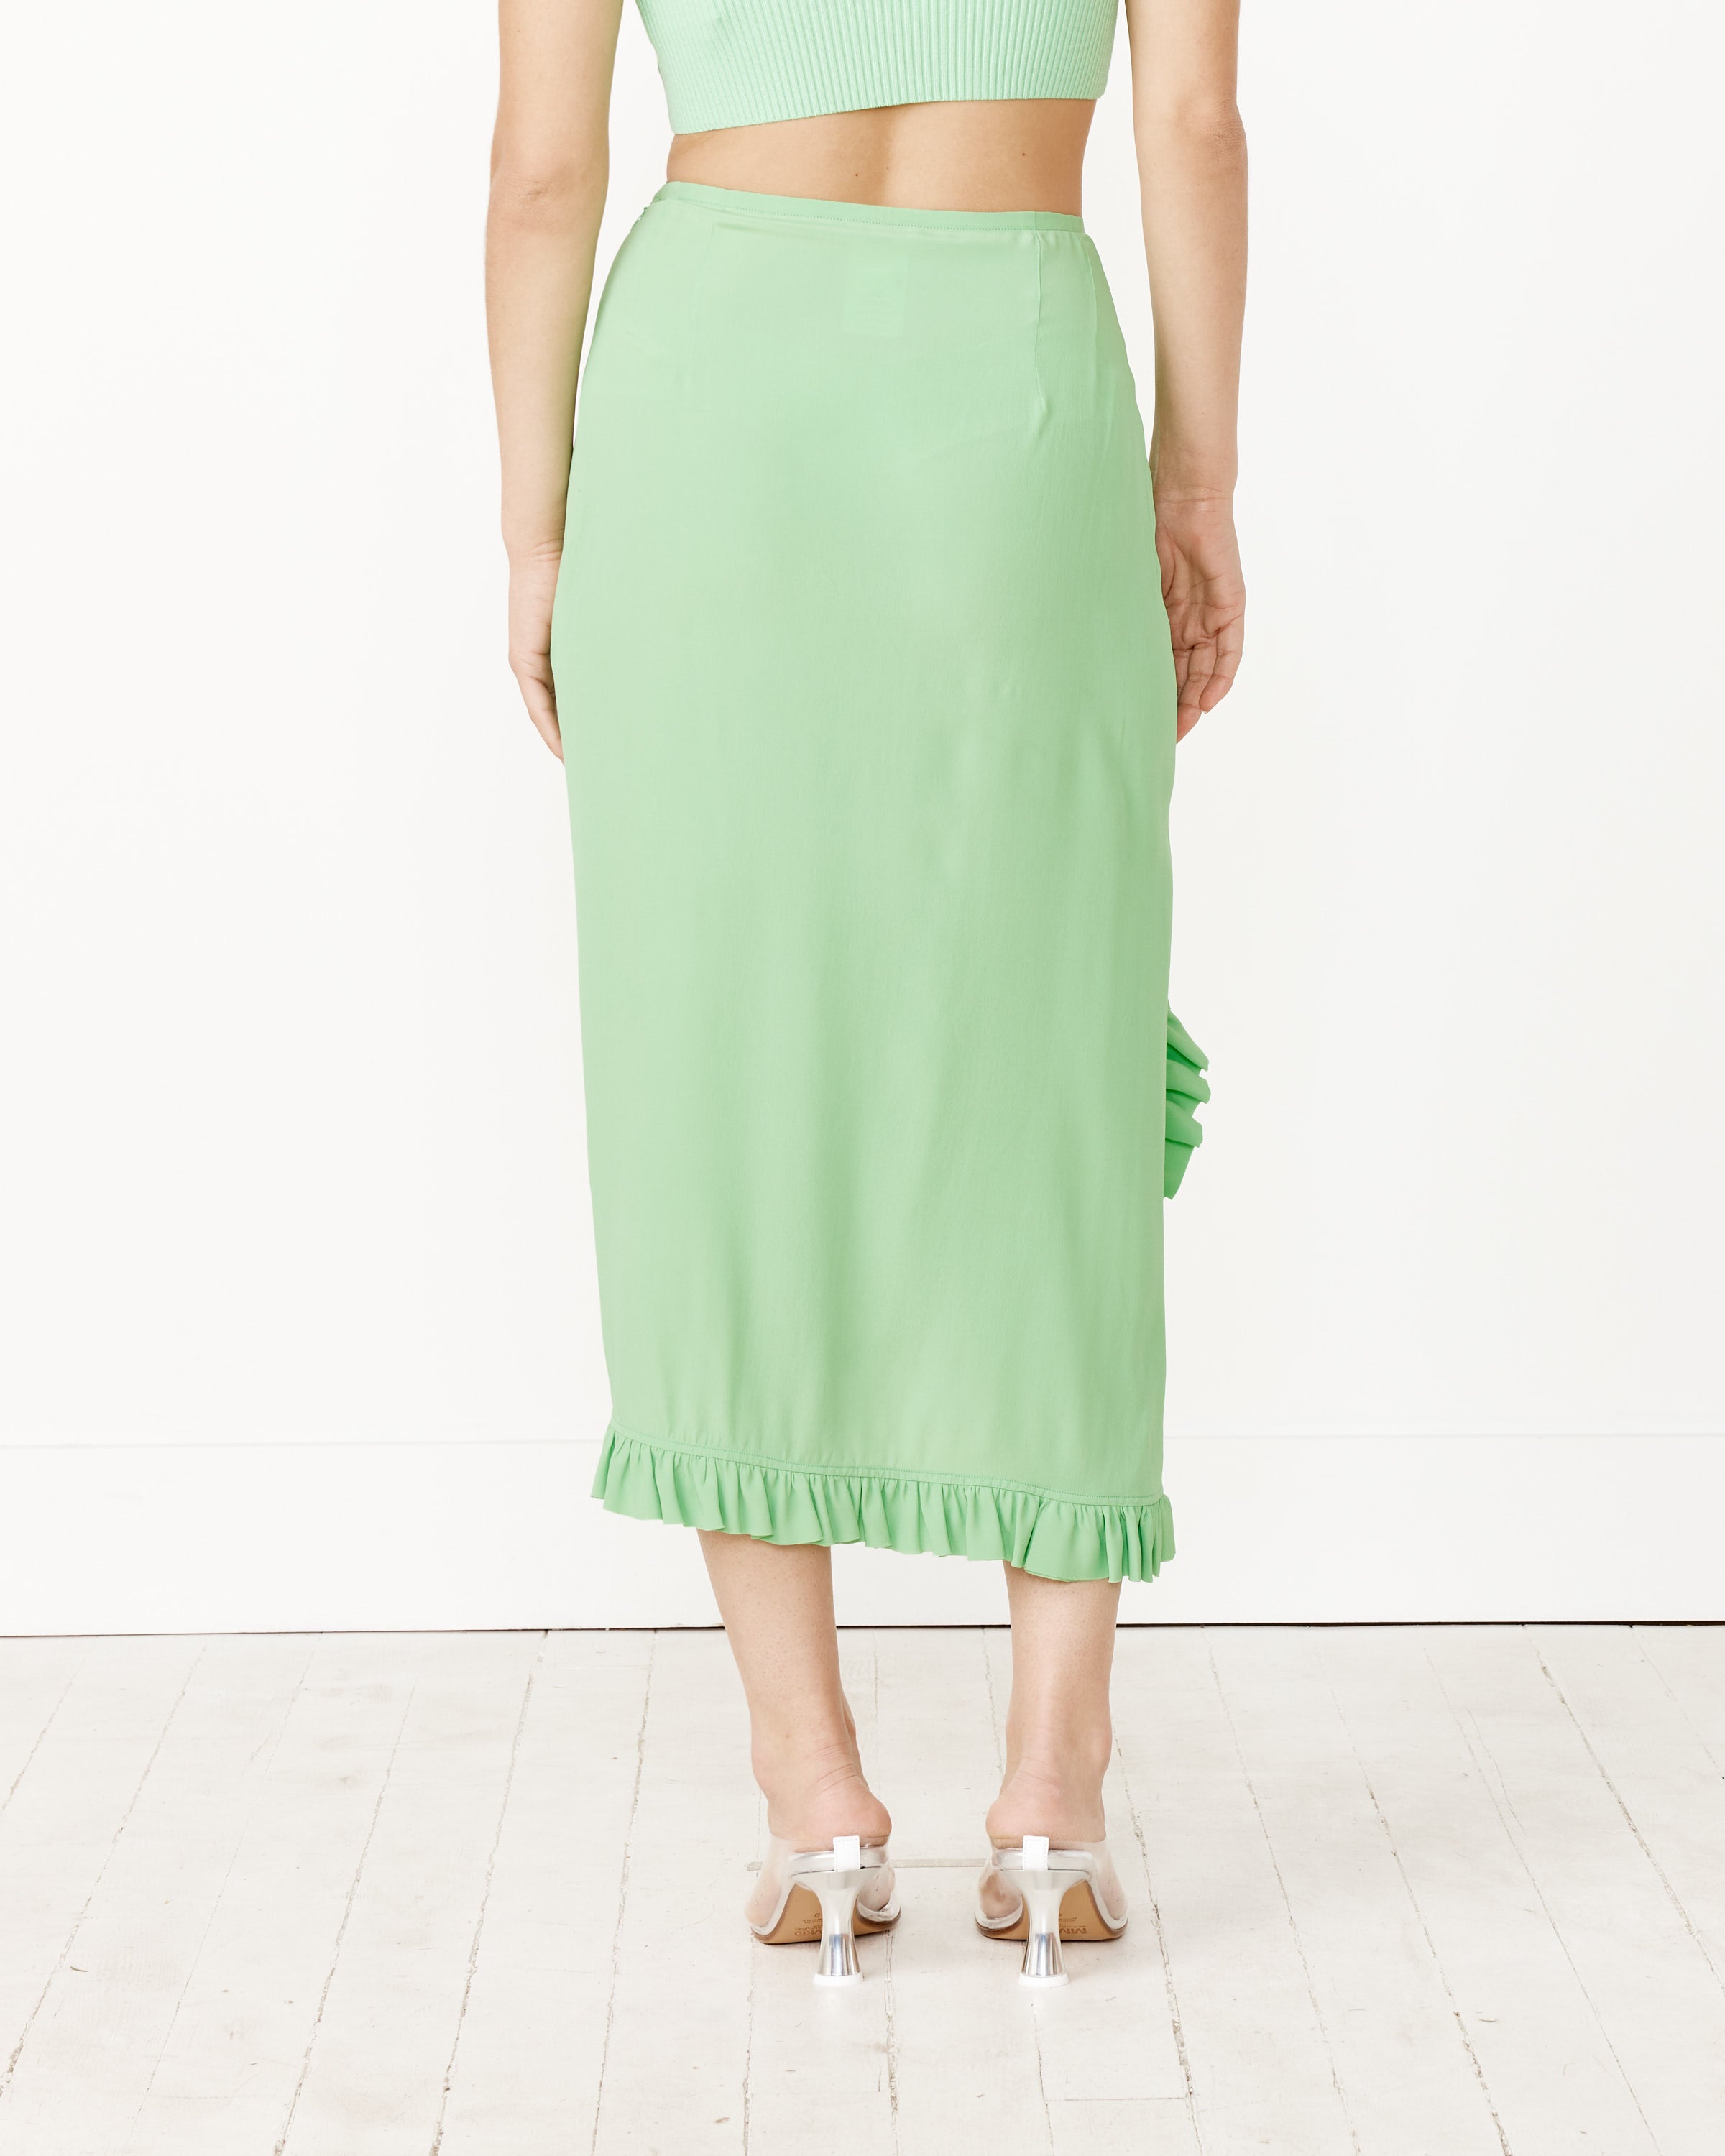 Ruffle Skirt in Light Green